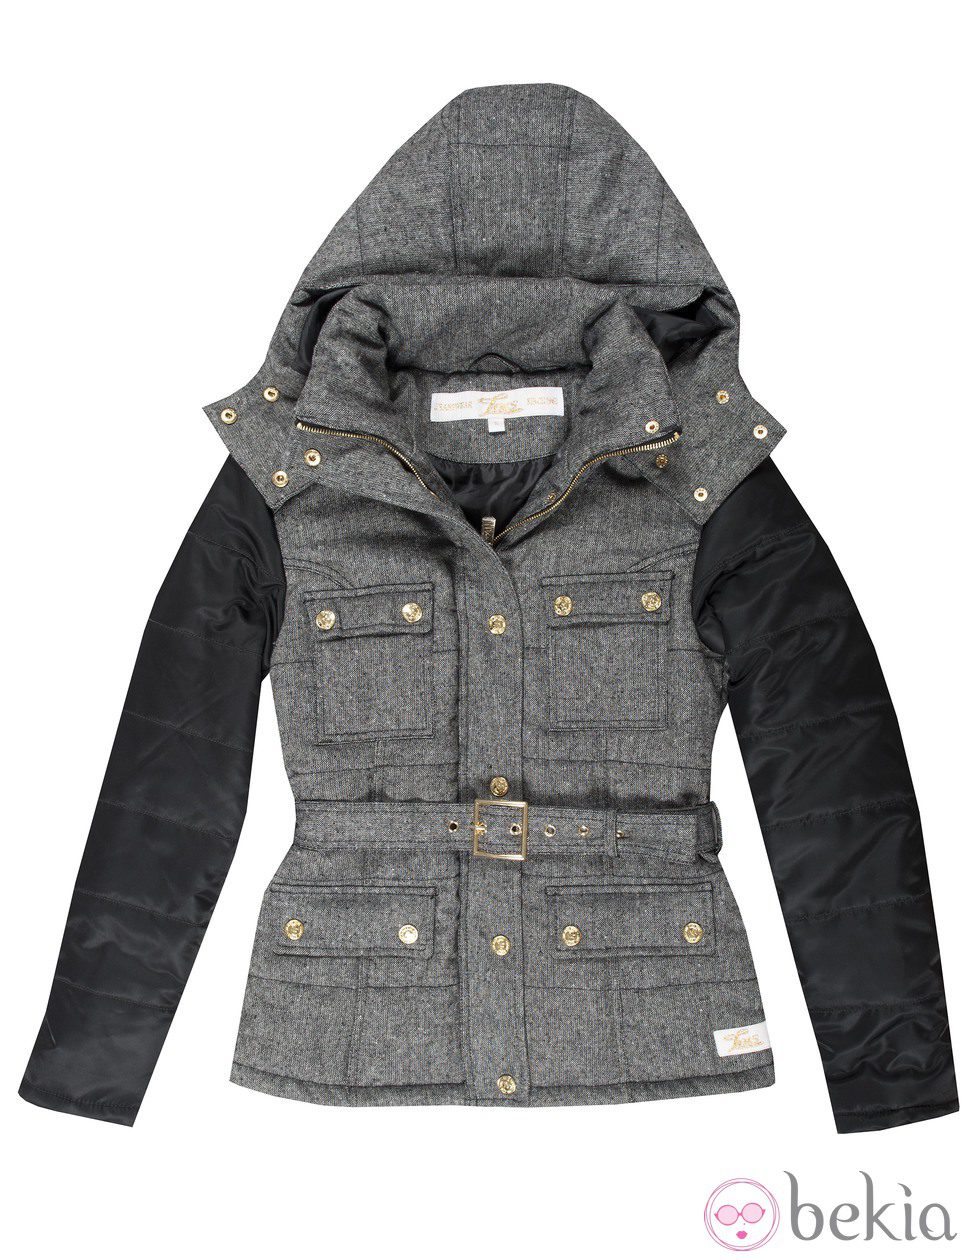 Abrigo gris y negro de la colección otoño/invierno 2014/2015 de Lois